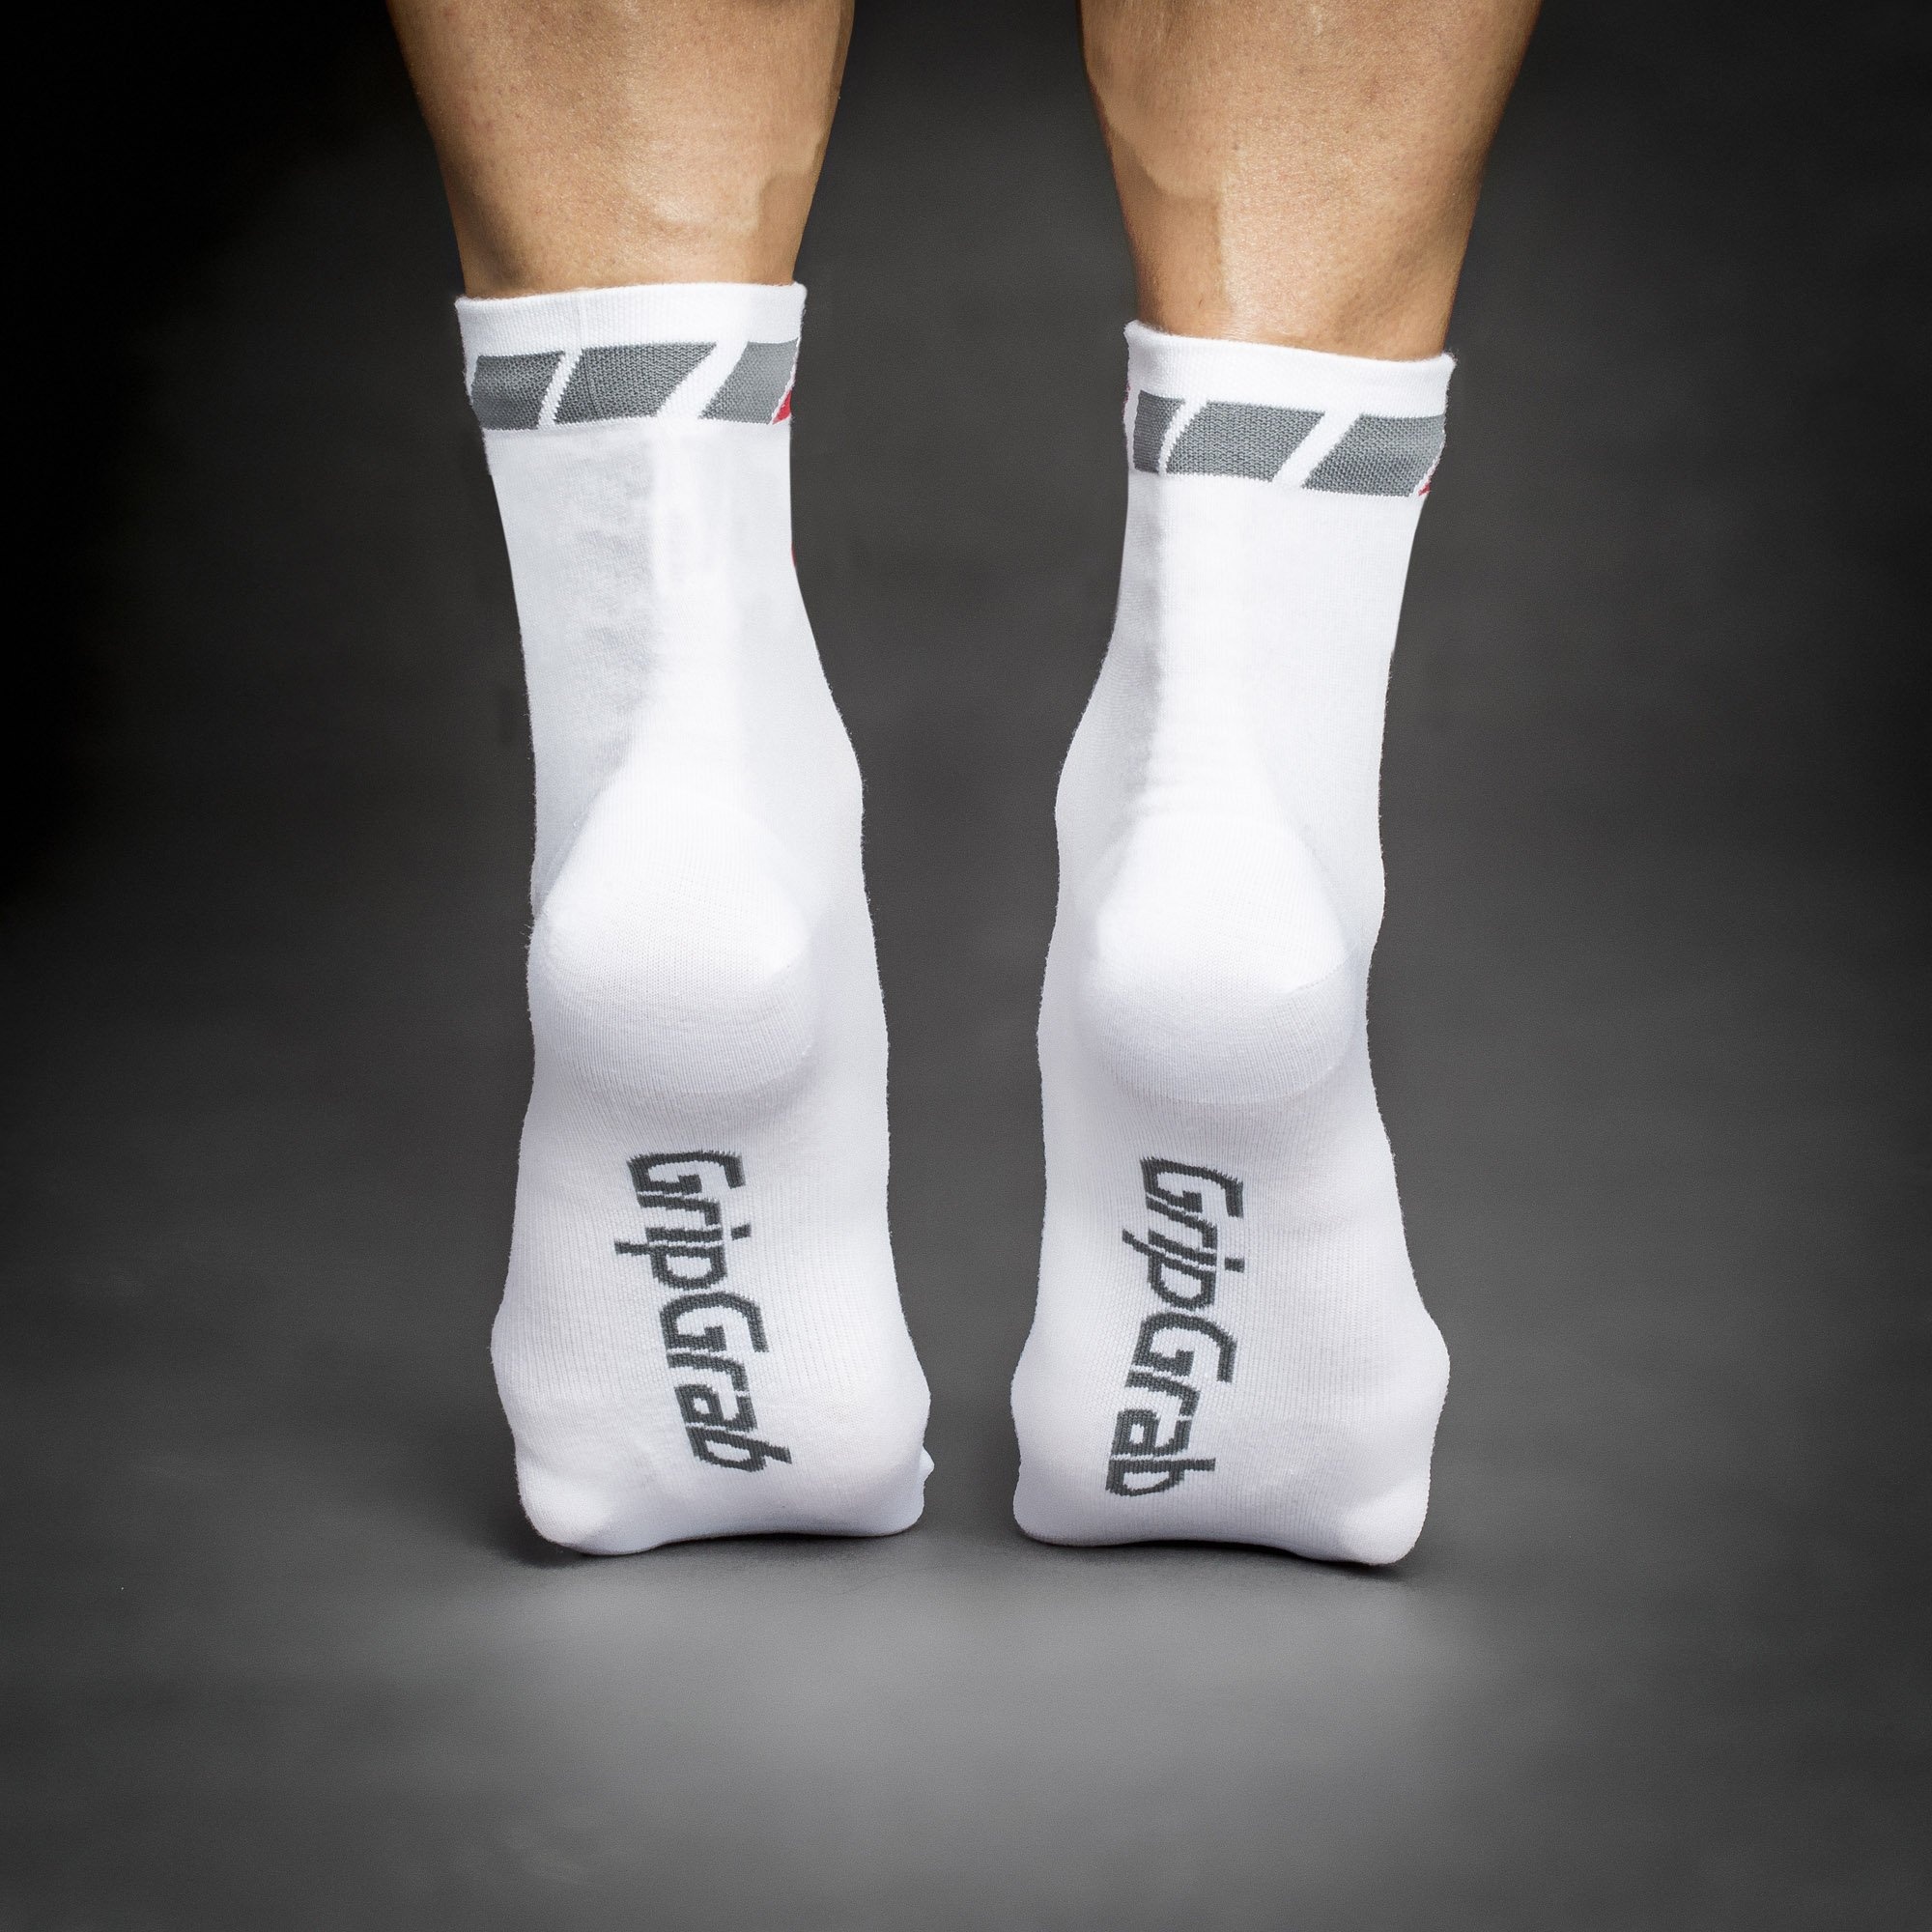 Beklædning - Sokker - GripGrab 3-Pack Regular Cut Summer Sock, hvid